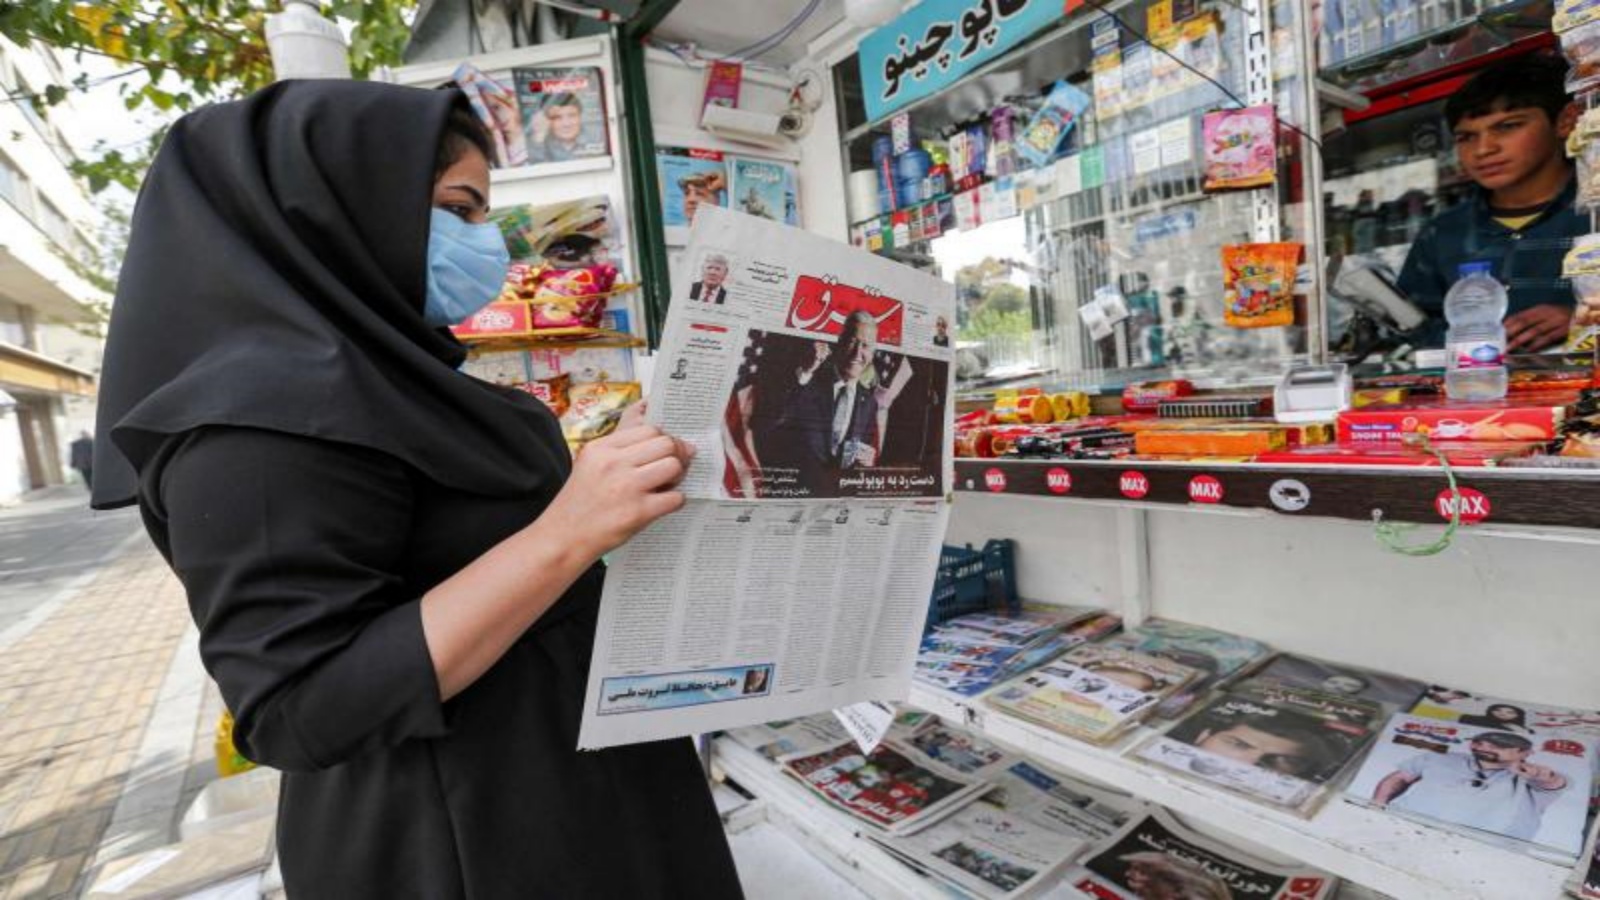 امرأة إيرانية تتصفح نسخة من صحيفة فارسية تعرض نتائج الانتخابات العامة الأمريكية لعام 2020 في كشك إخباري في العاصمة الإيرانية طهران في 8 نوفمبر